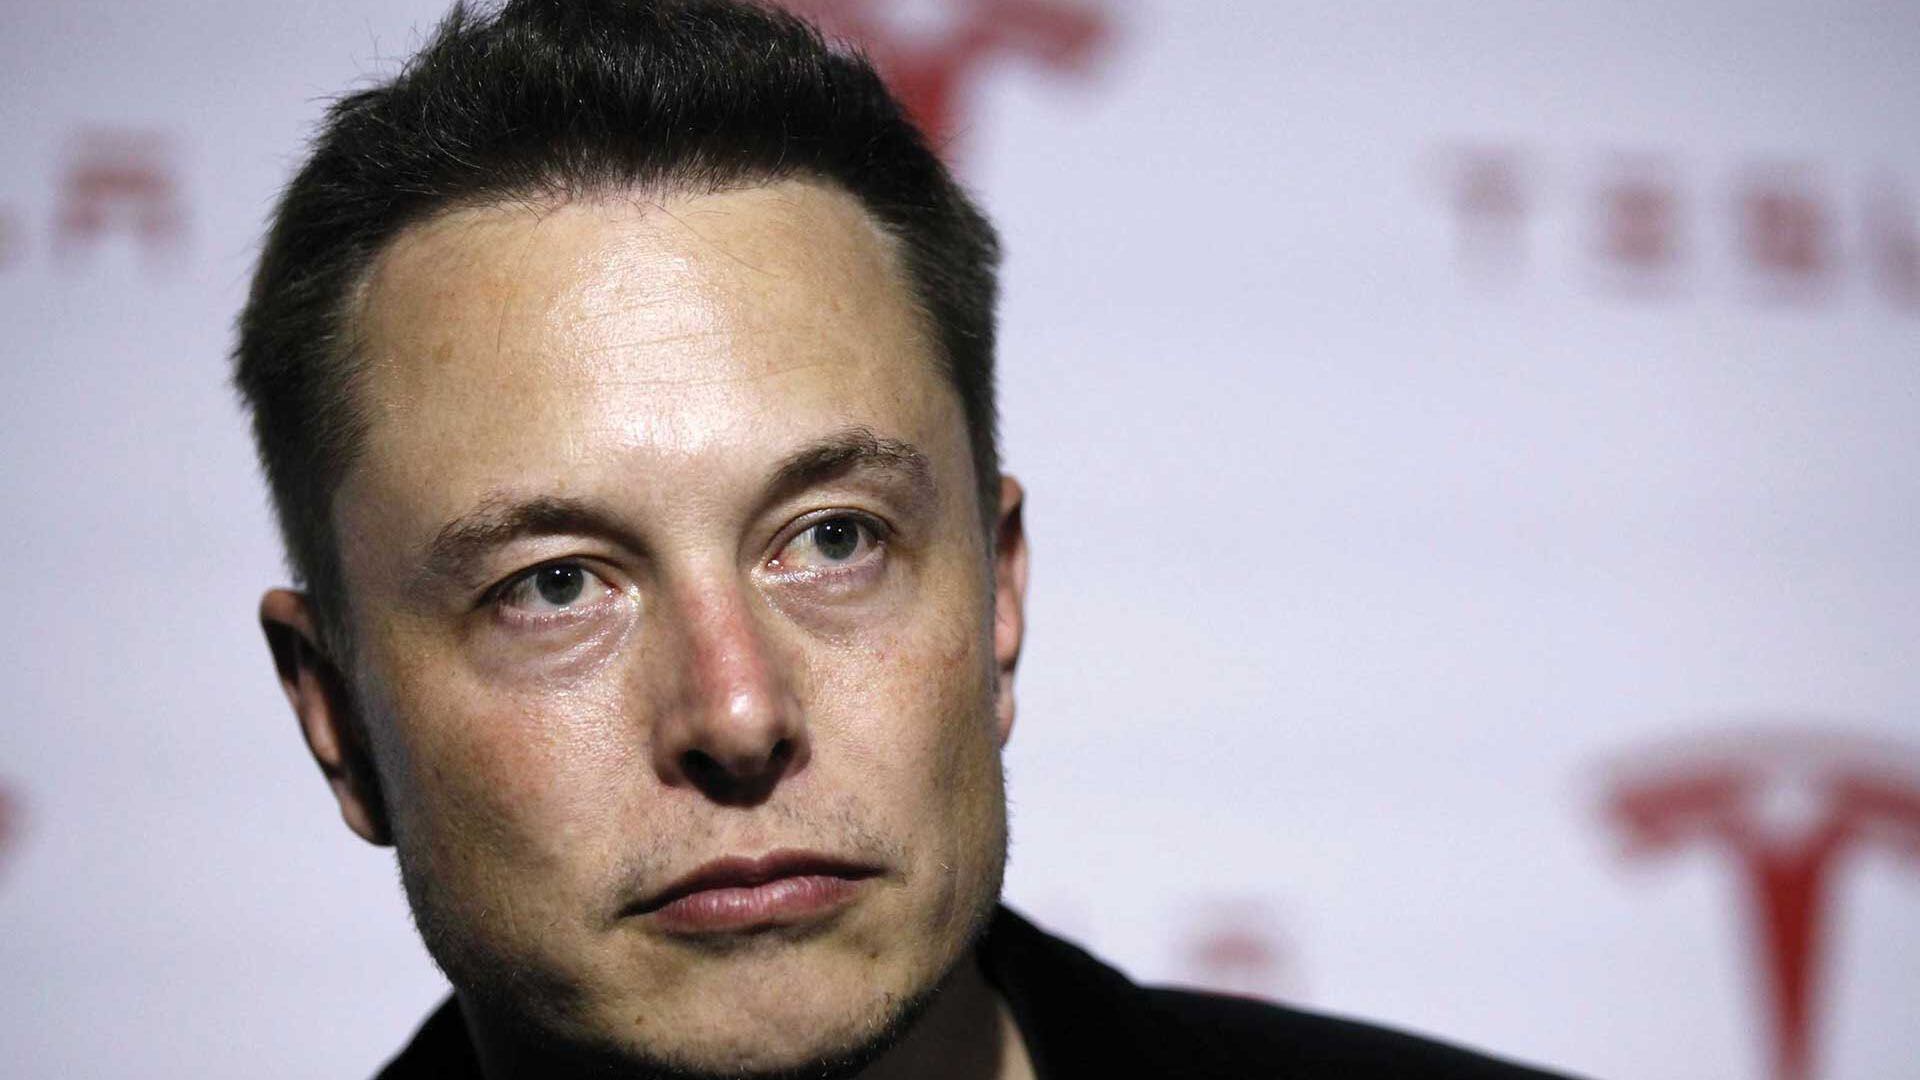 El fin de la época infernal de Elon Musk llegaría con la desautomatización de las cadenas de montaje en Tesla.